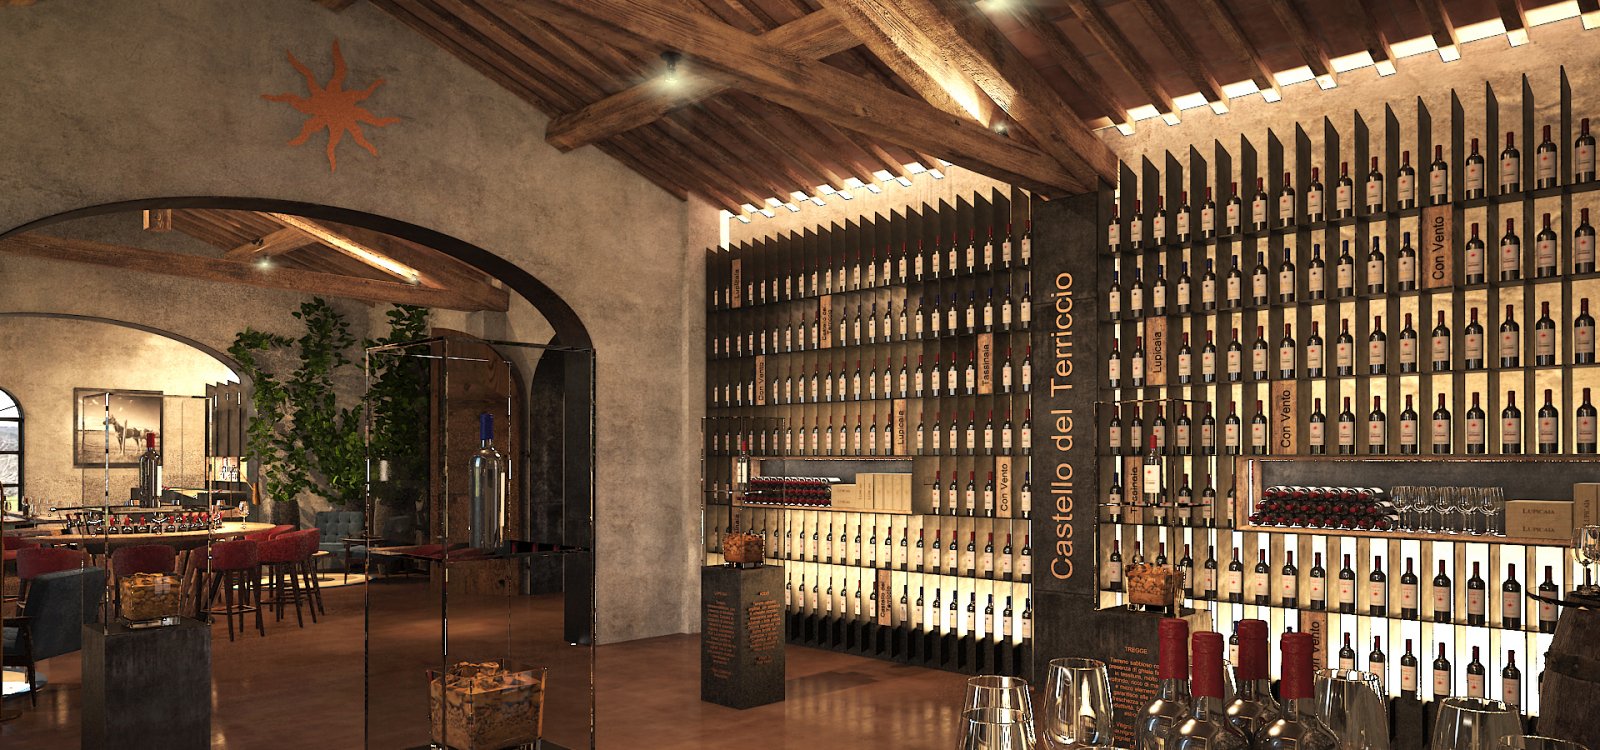 Castello del Terriccio Wine Shop and Terraforte Restaurant